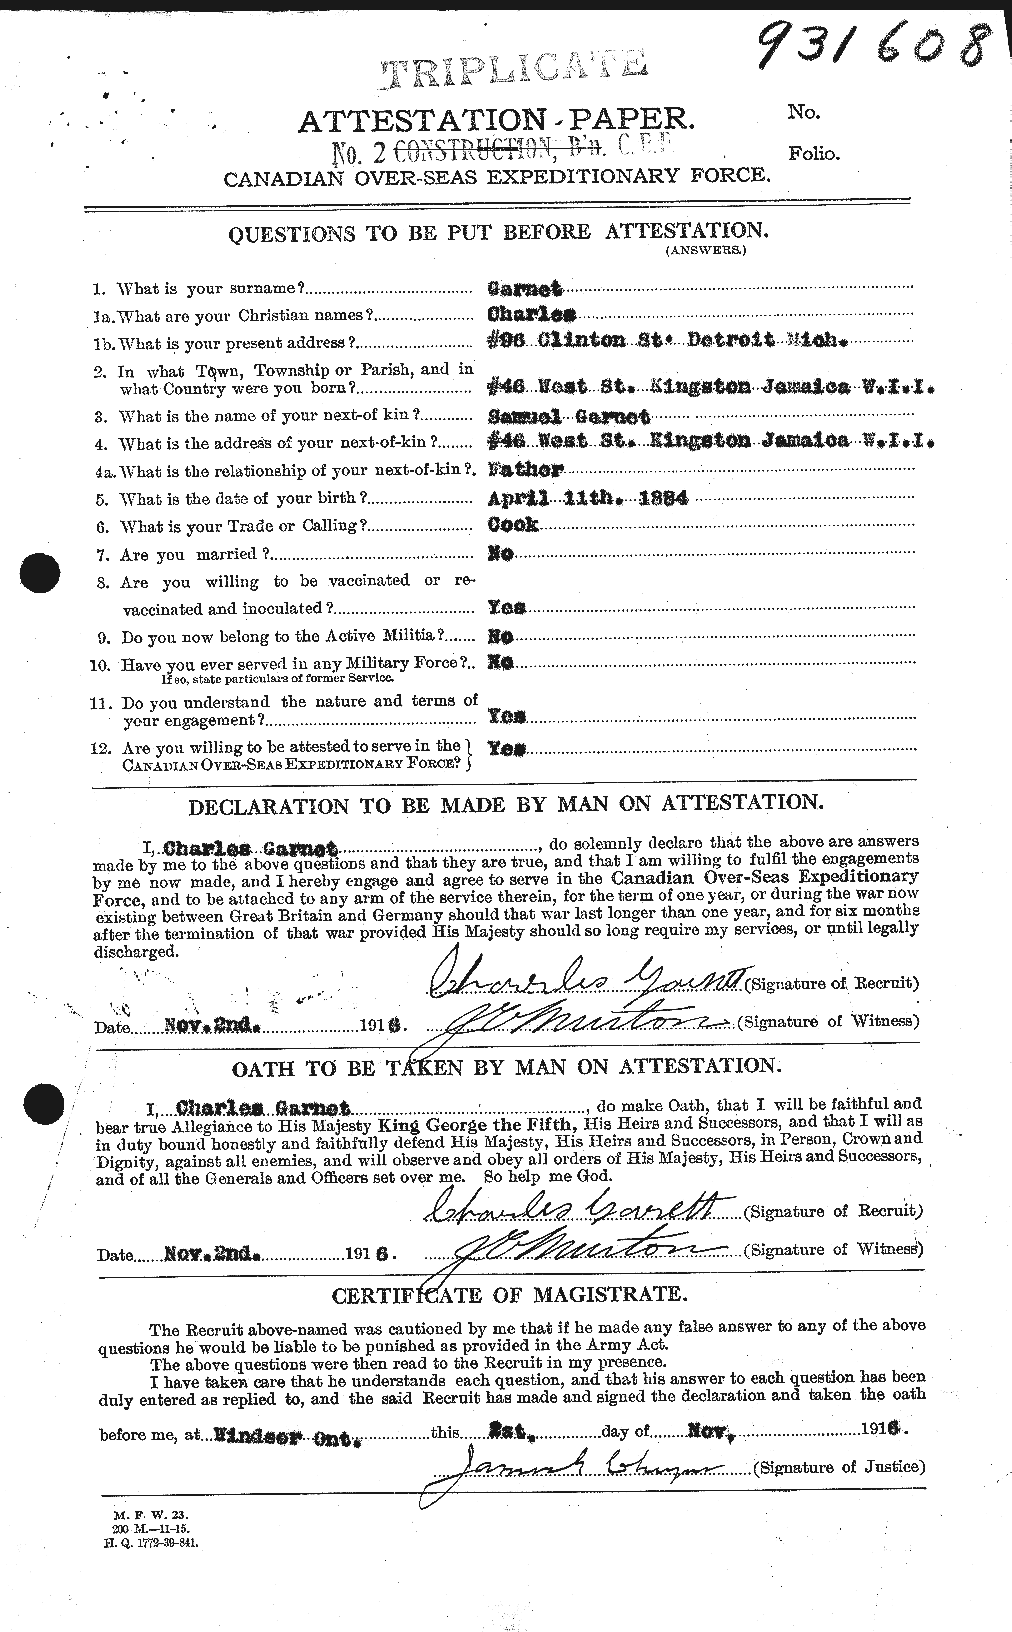 Dossiers du Personnel de la Première Guerre mondiale - CEC 341907a